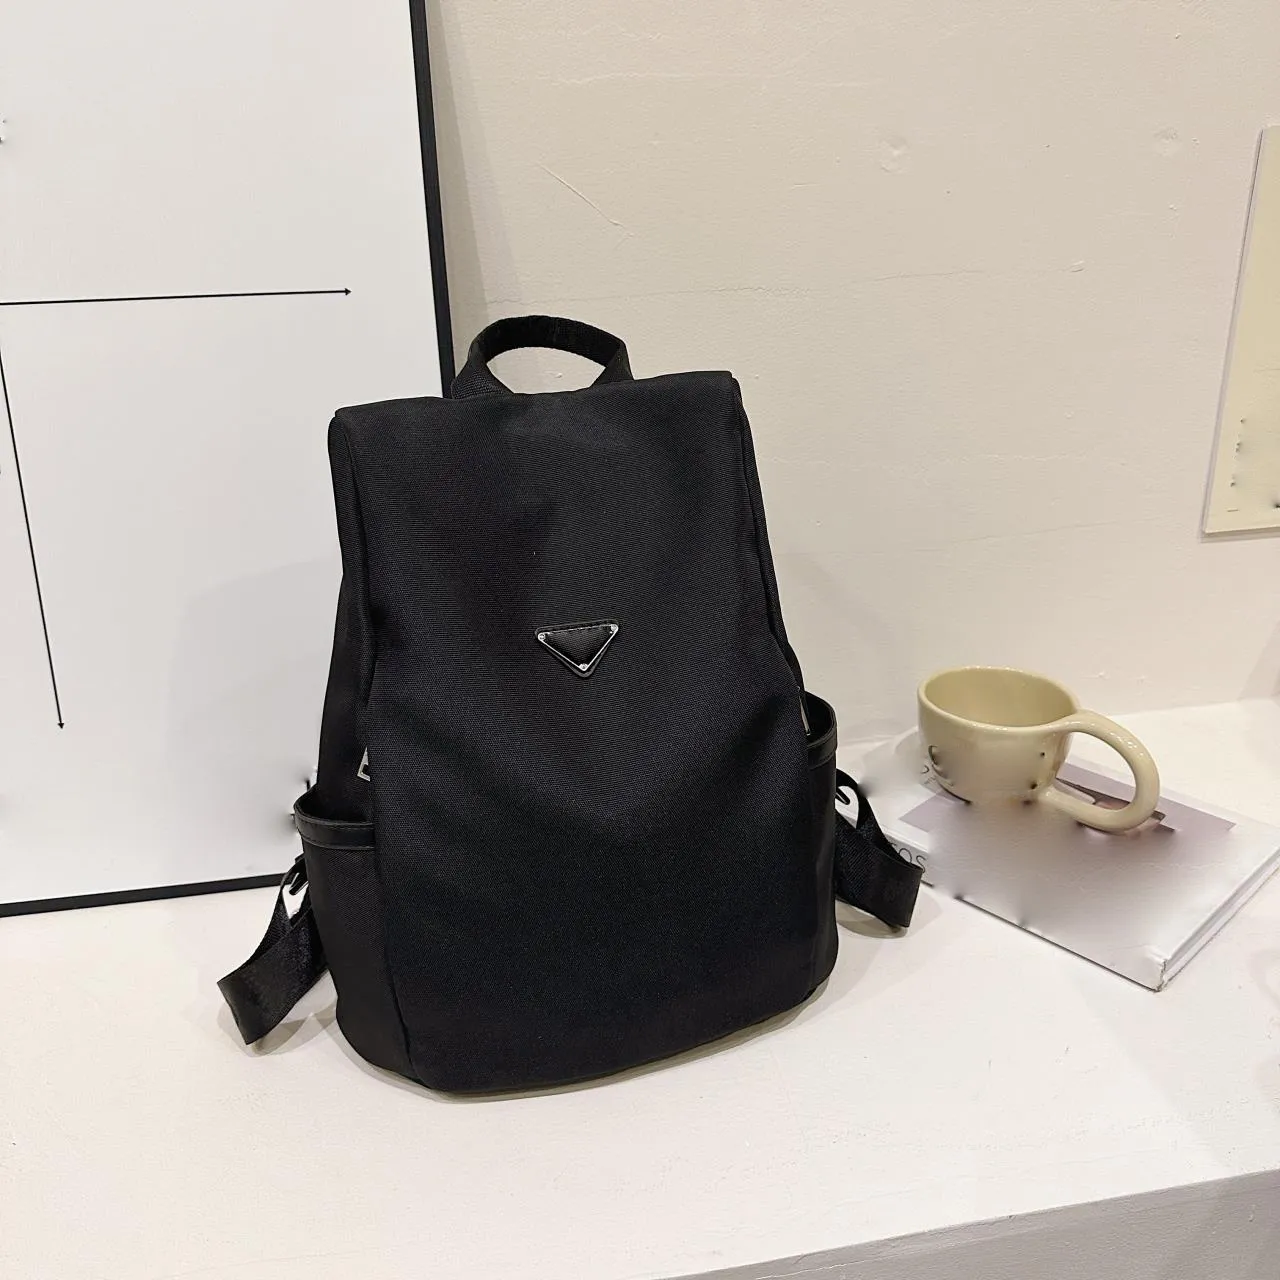 PRADE Designer Bags Backpack Laptop Bag Simple Bookbag Travel Workbackpack for Men Women Adjustable Shoulder Strap with Embroidered Letters 30x37x15cm